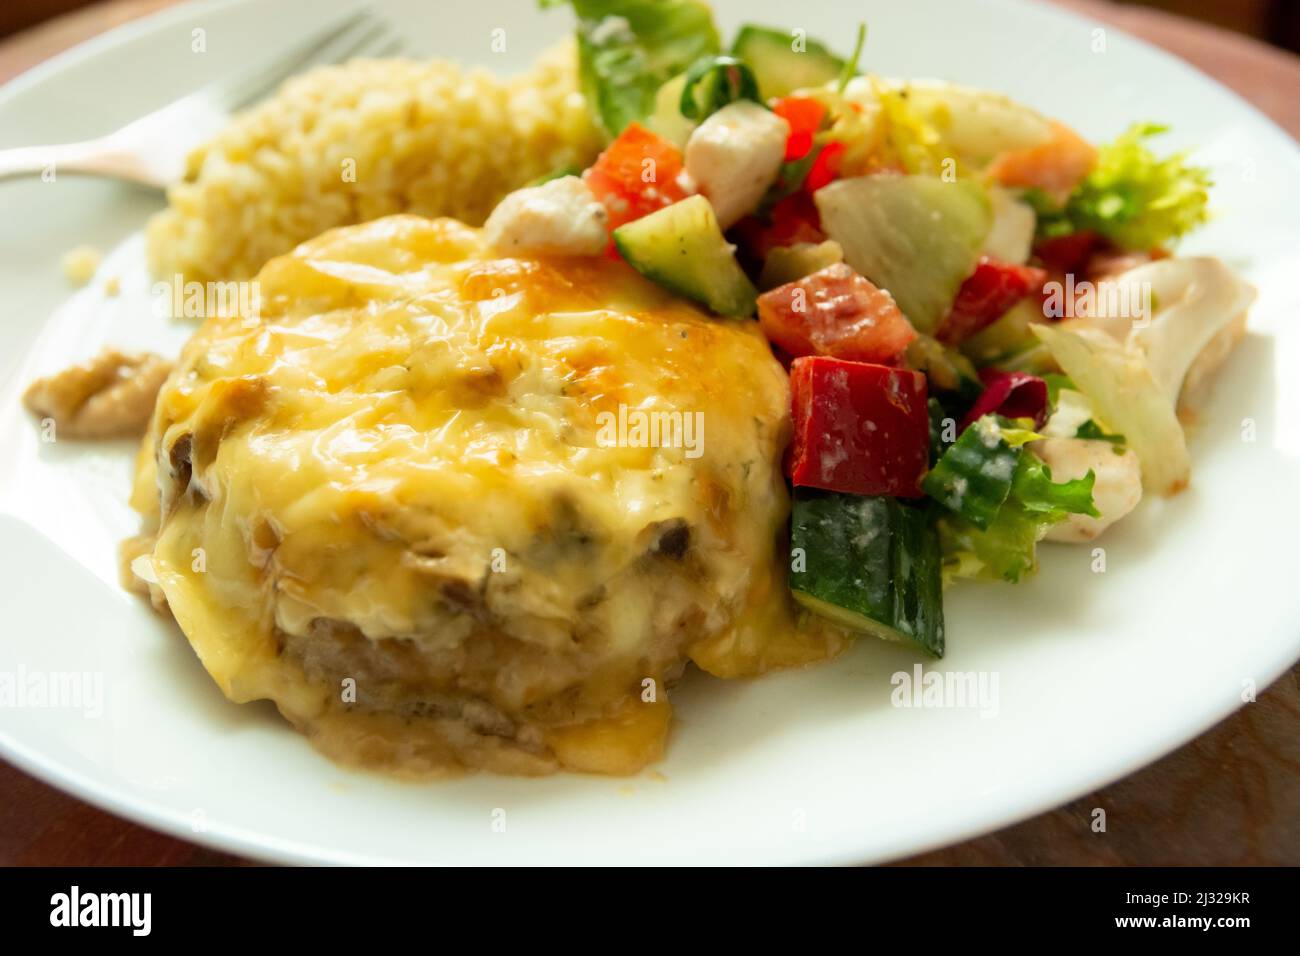 Abendessen Gericht mit großen gehackten Schnitzel mit gelbem Käse und Salat mit roten Paprika, Gurke und weißem Käse. Stockfoto